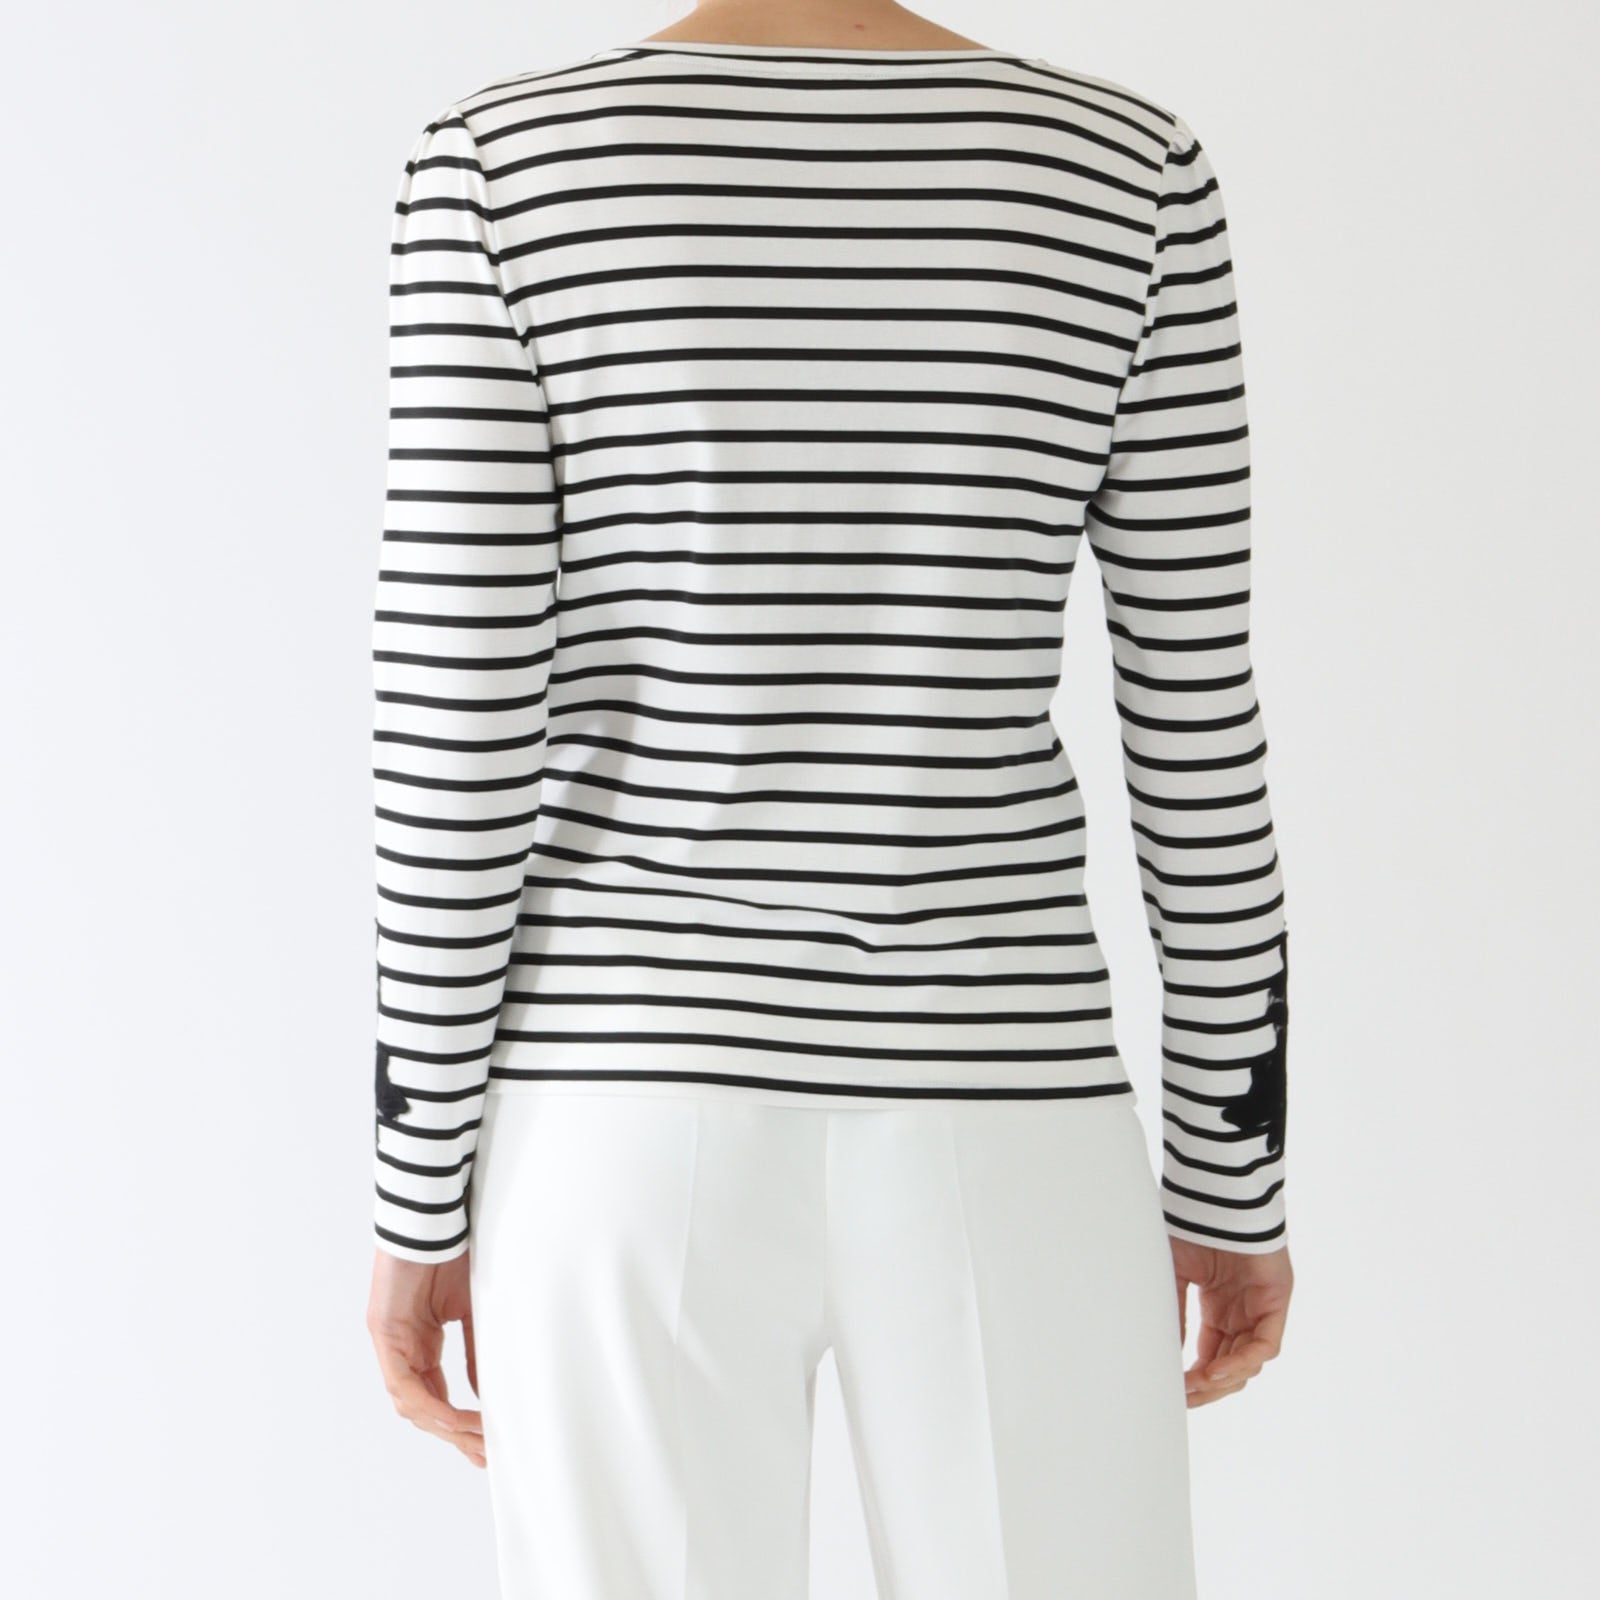 Black & White Striped Long Sleeved T-Shirt